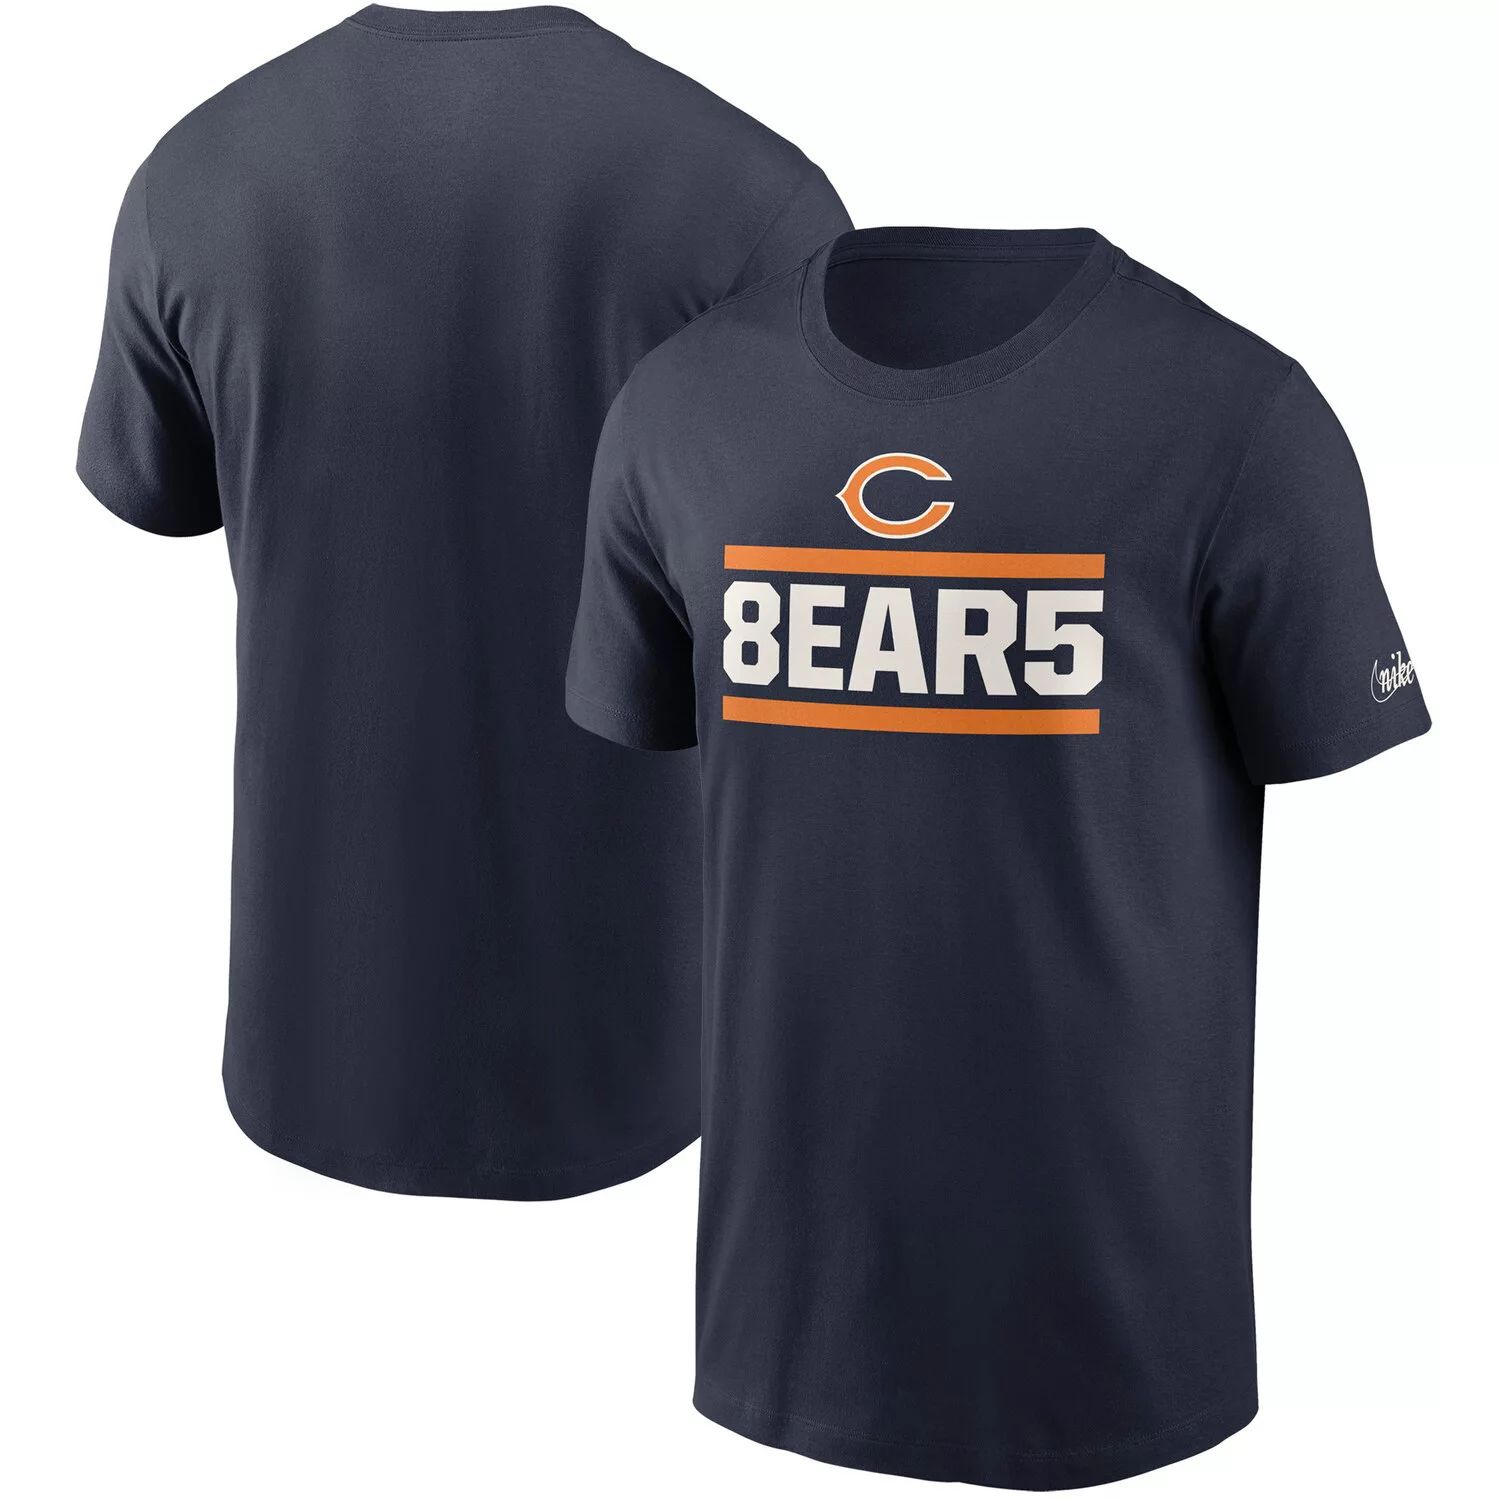 Мужская темно-синяя футболка Nike Chicago Bears Hometown Collection 8ear5